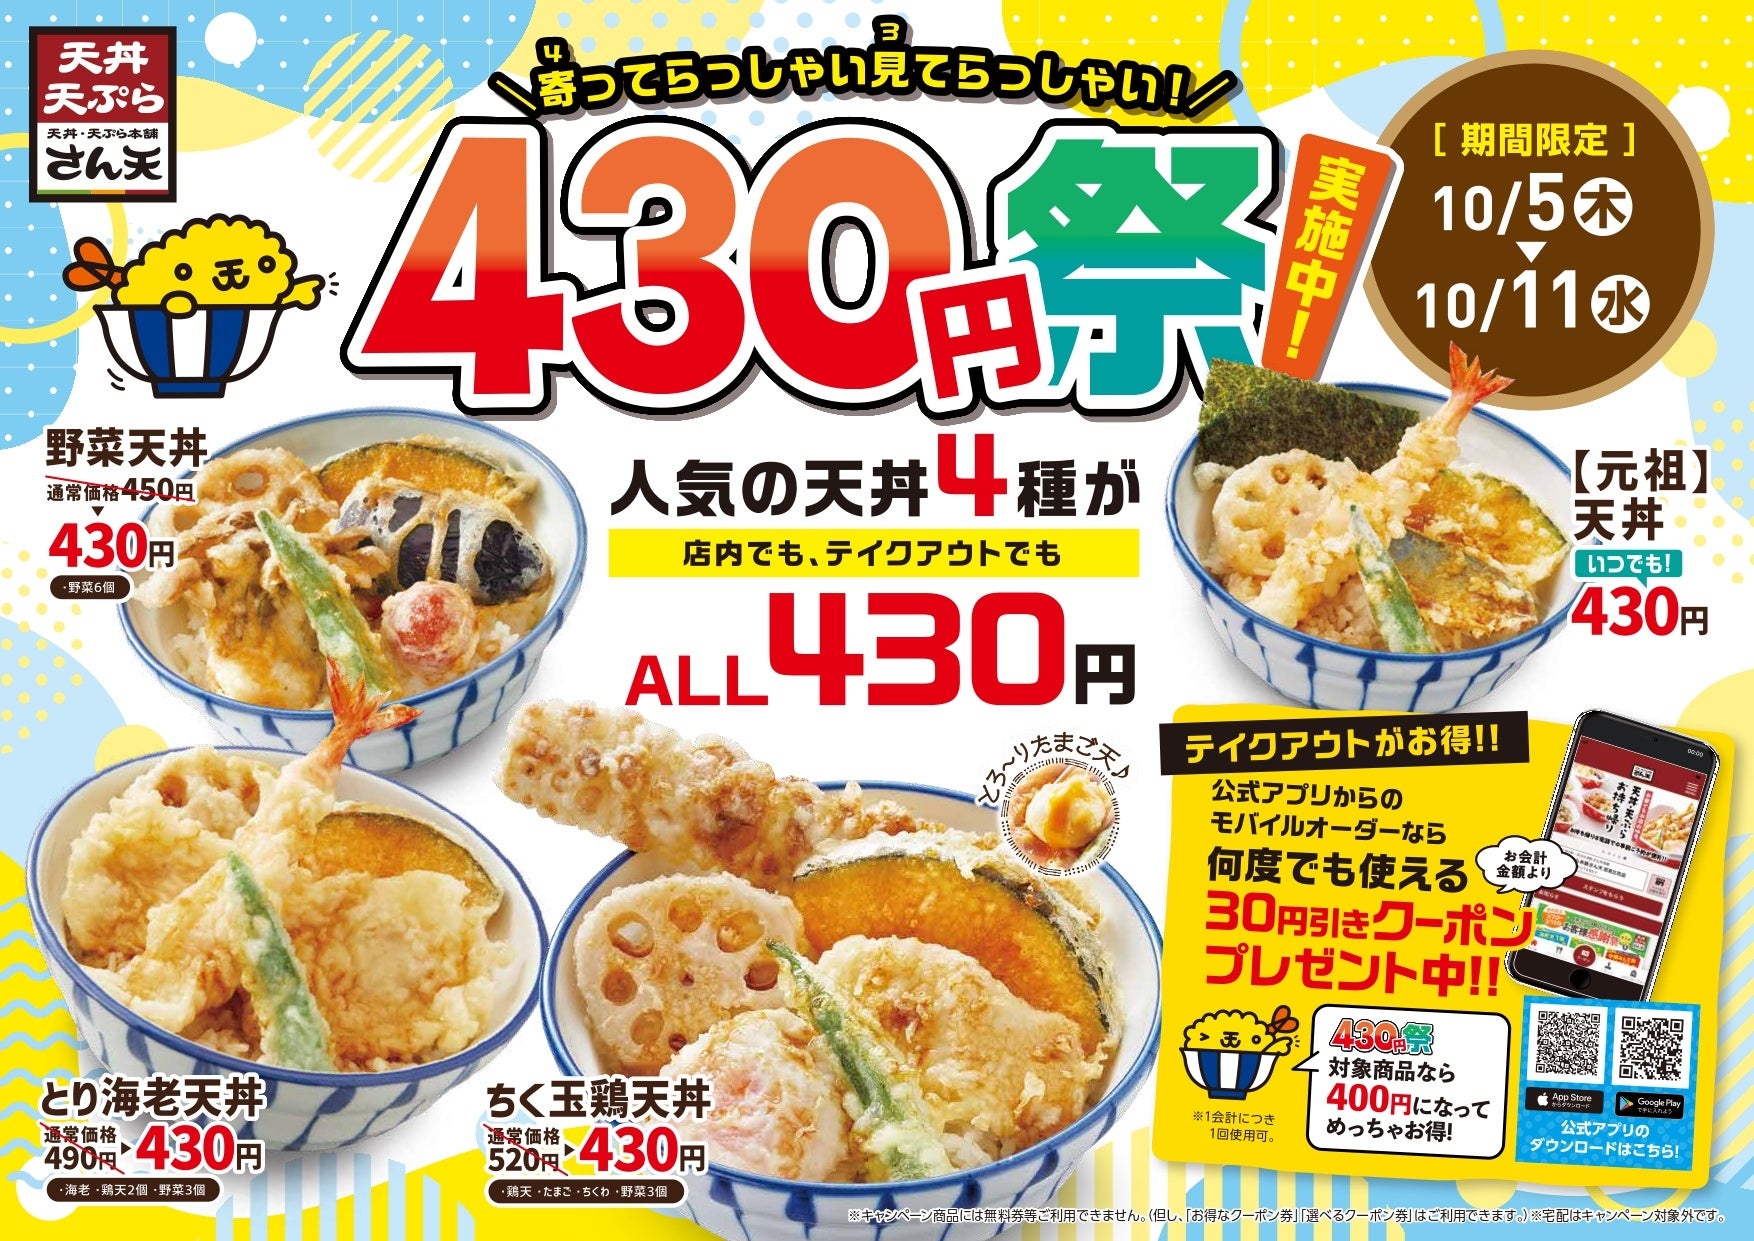 【天丼・天ぷら本舗 さん天】天丼430円祭りを開催